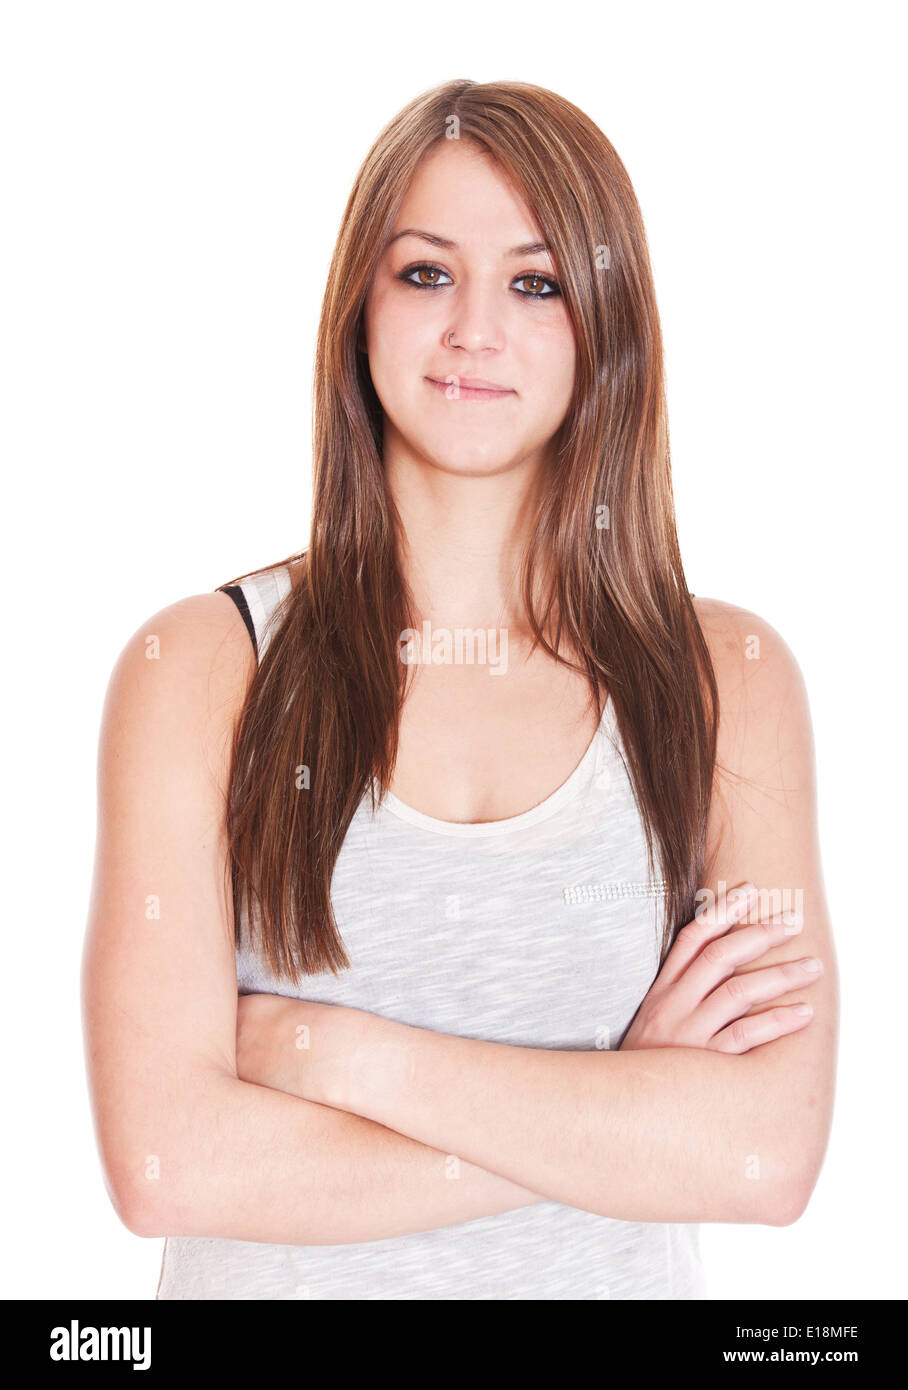 Porträt von einer attraktiven jungen Frau. Alle auf weißem Hintergrund. Stockfoto